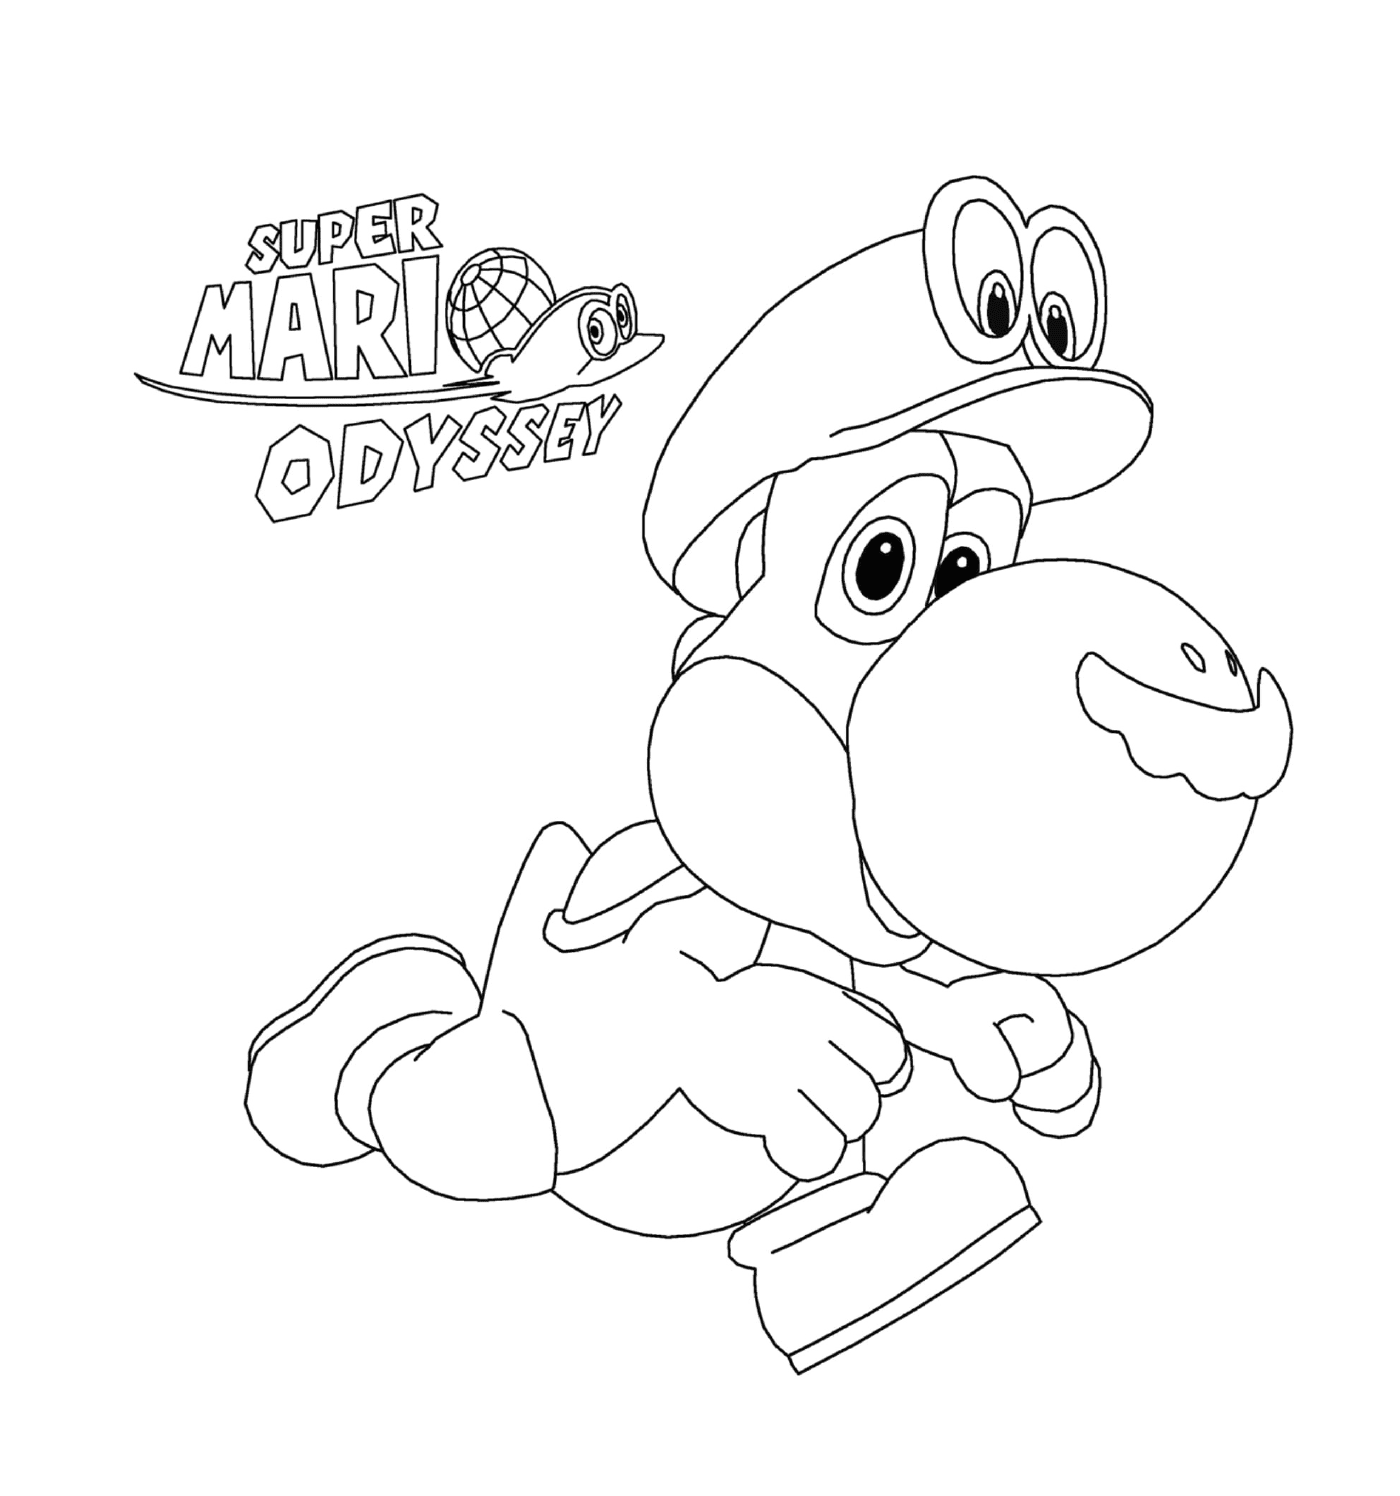  Super Mario Odyssey con Yoshi de Nintendo 